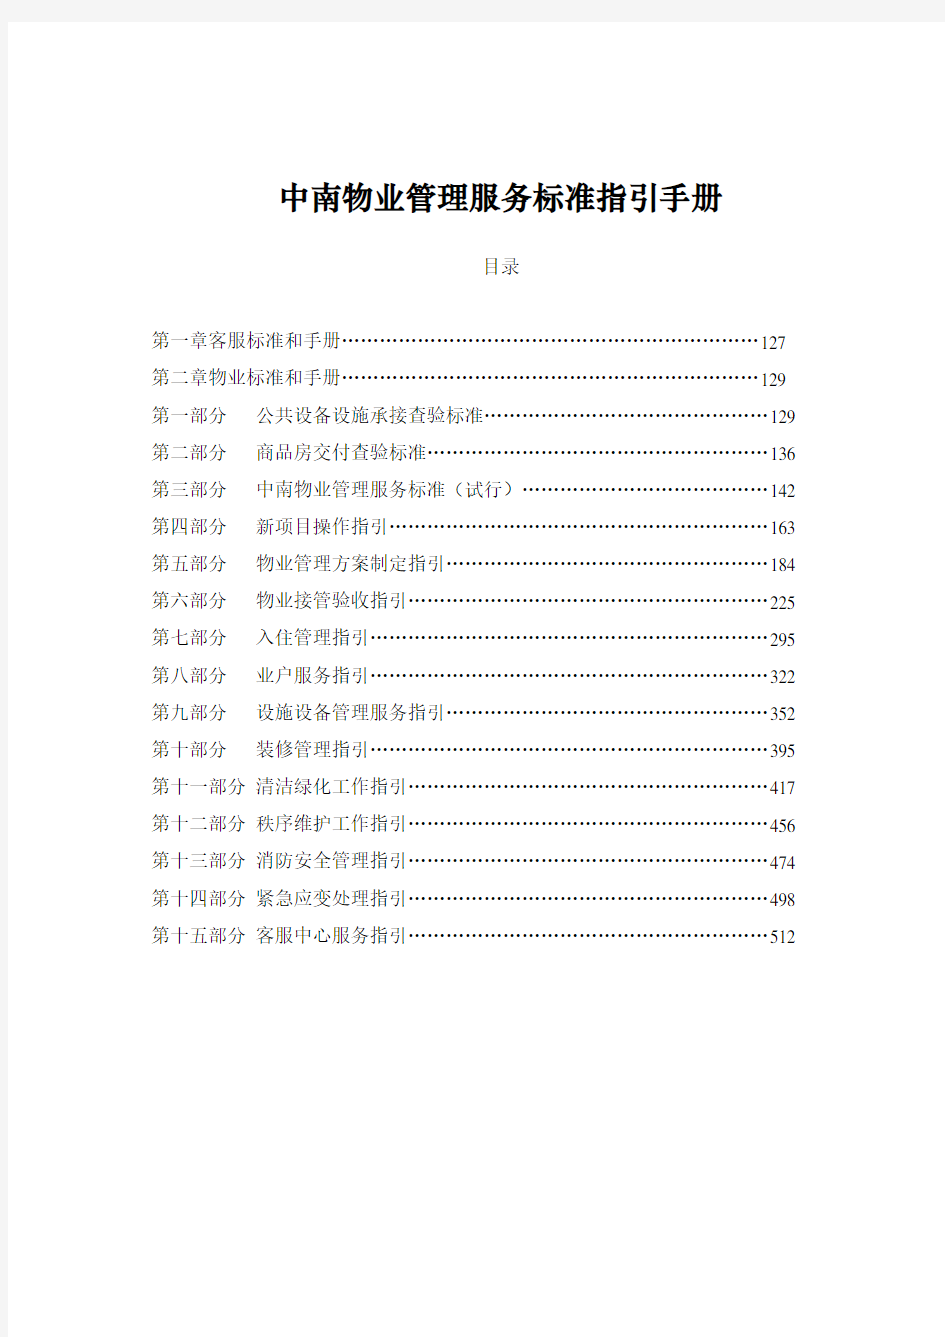 企业管理手册-中南物业管理服务标准指引手册 精品